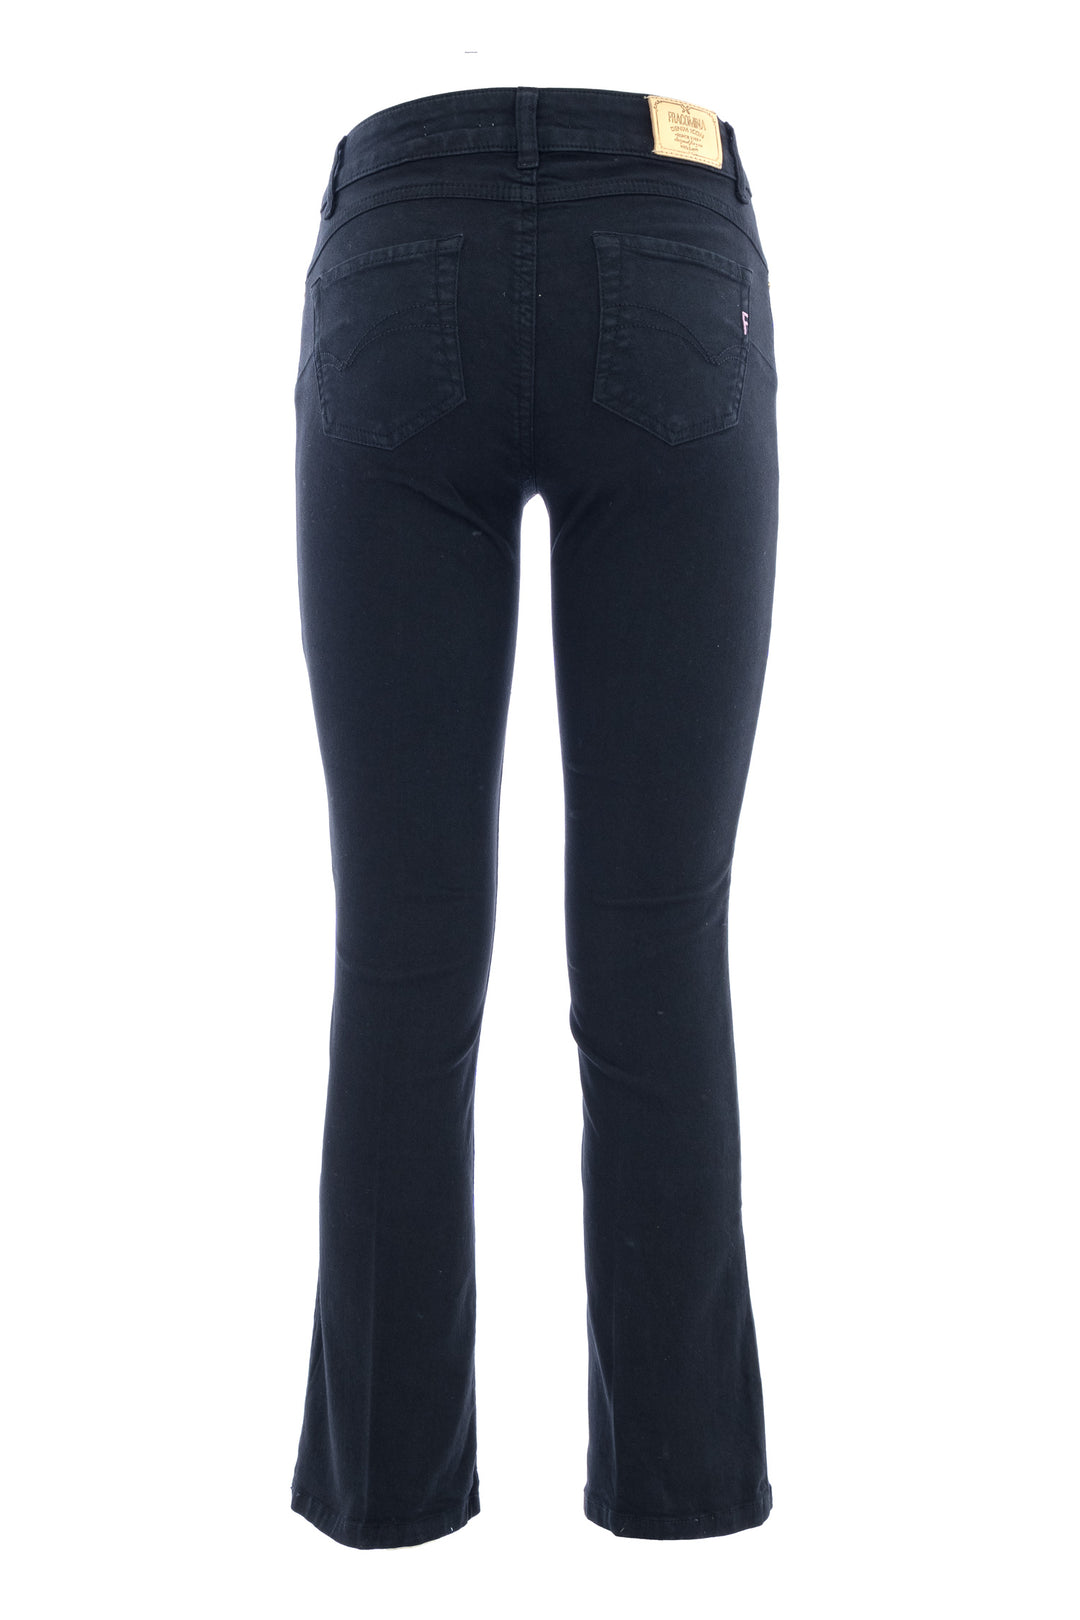 FRACOMINA Jeans Bella flare cropped in sofisticato denim stretch nero - Mancinelli 1954